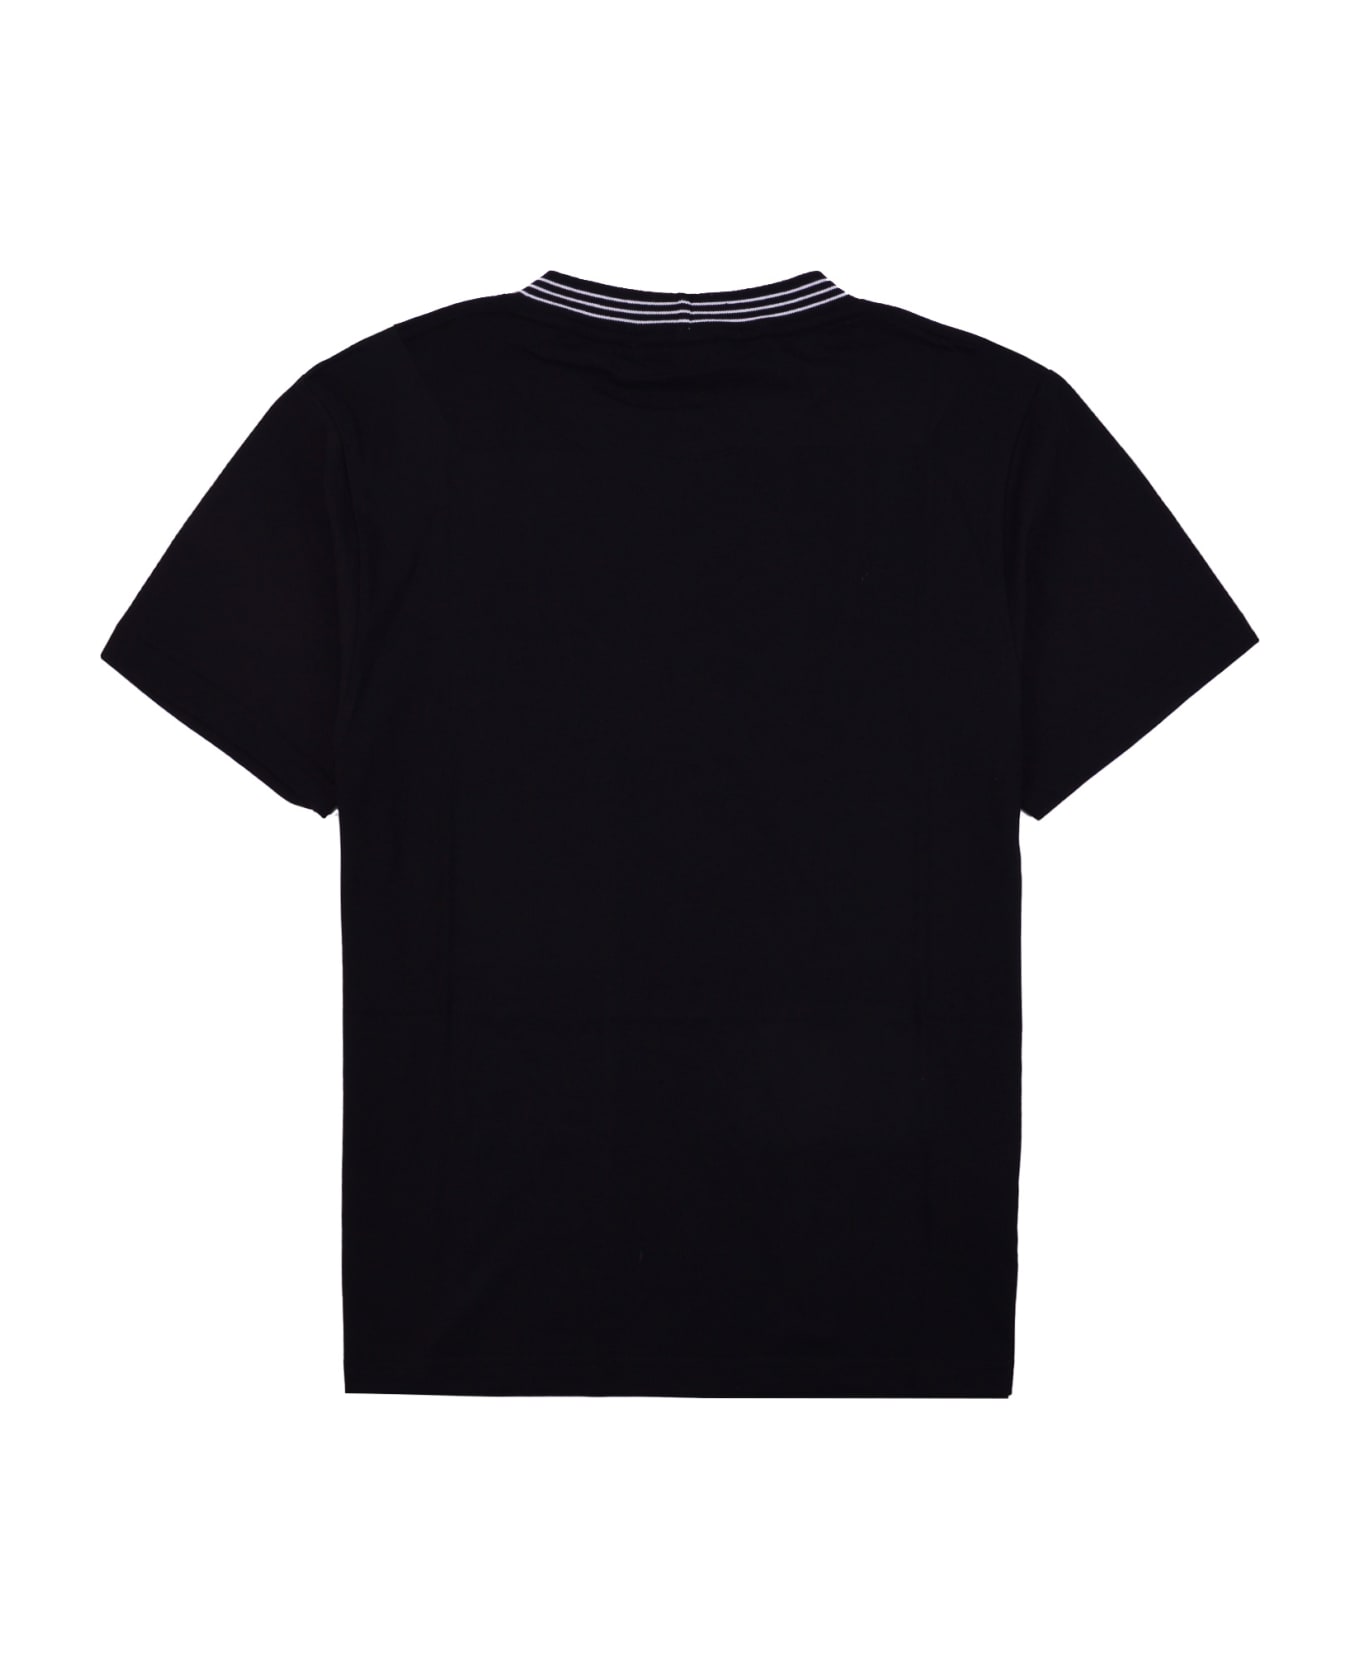 GCDS T-shirt - Black シャツ